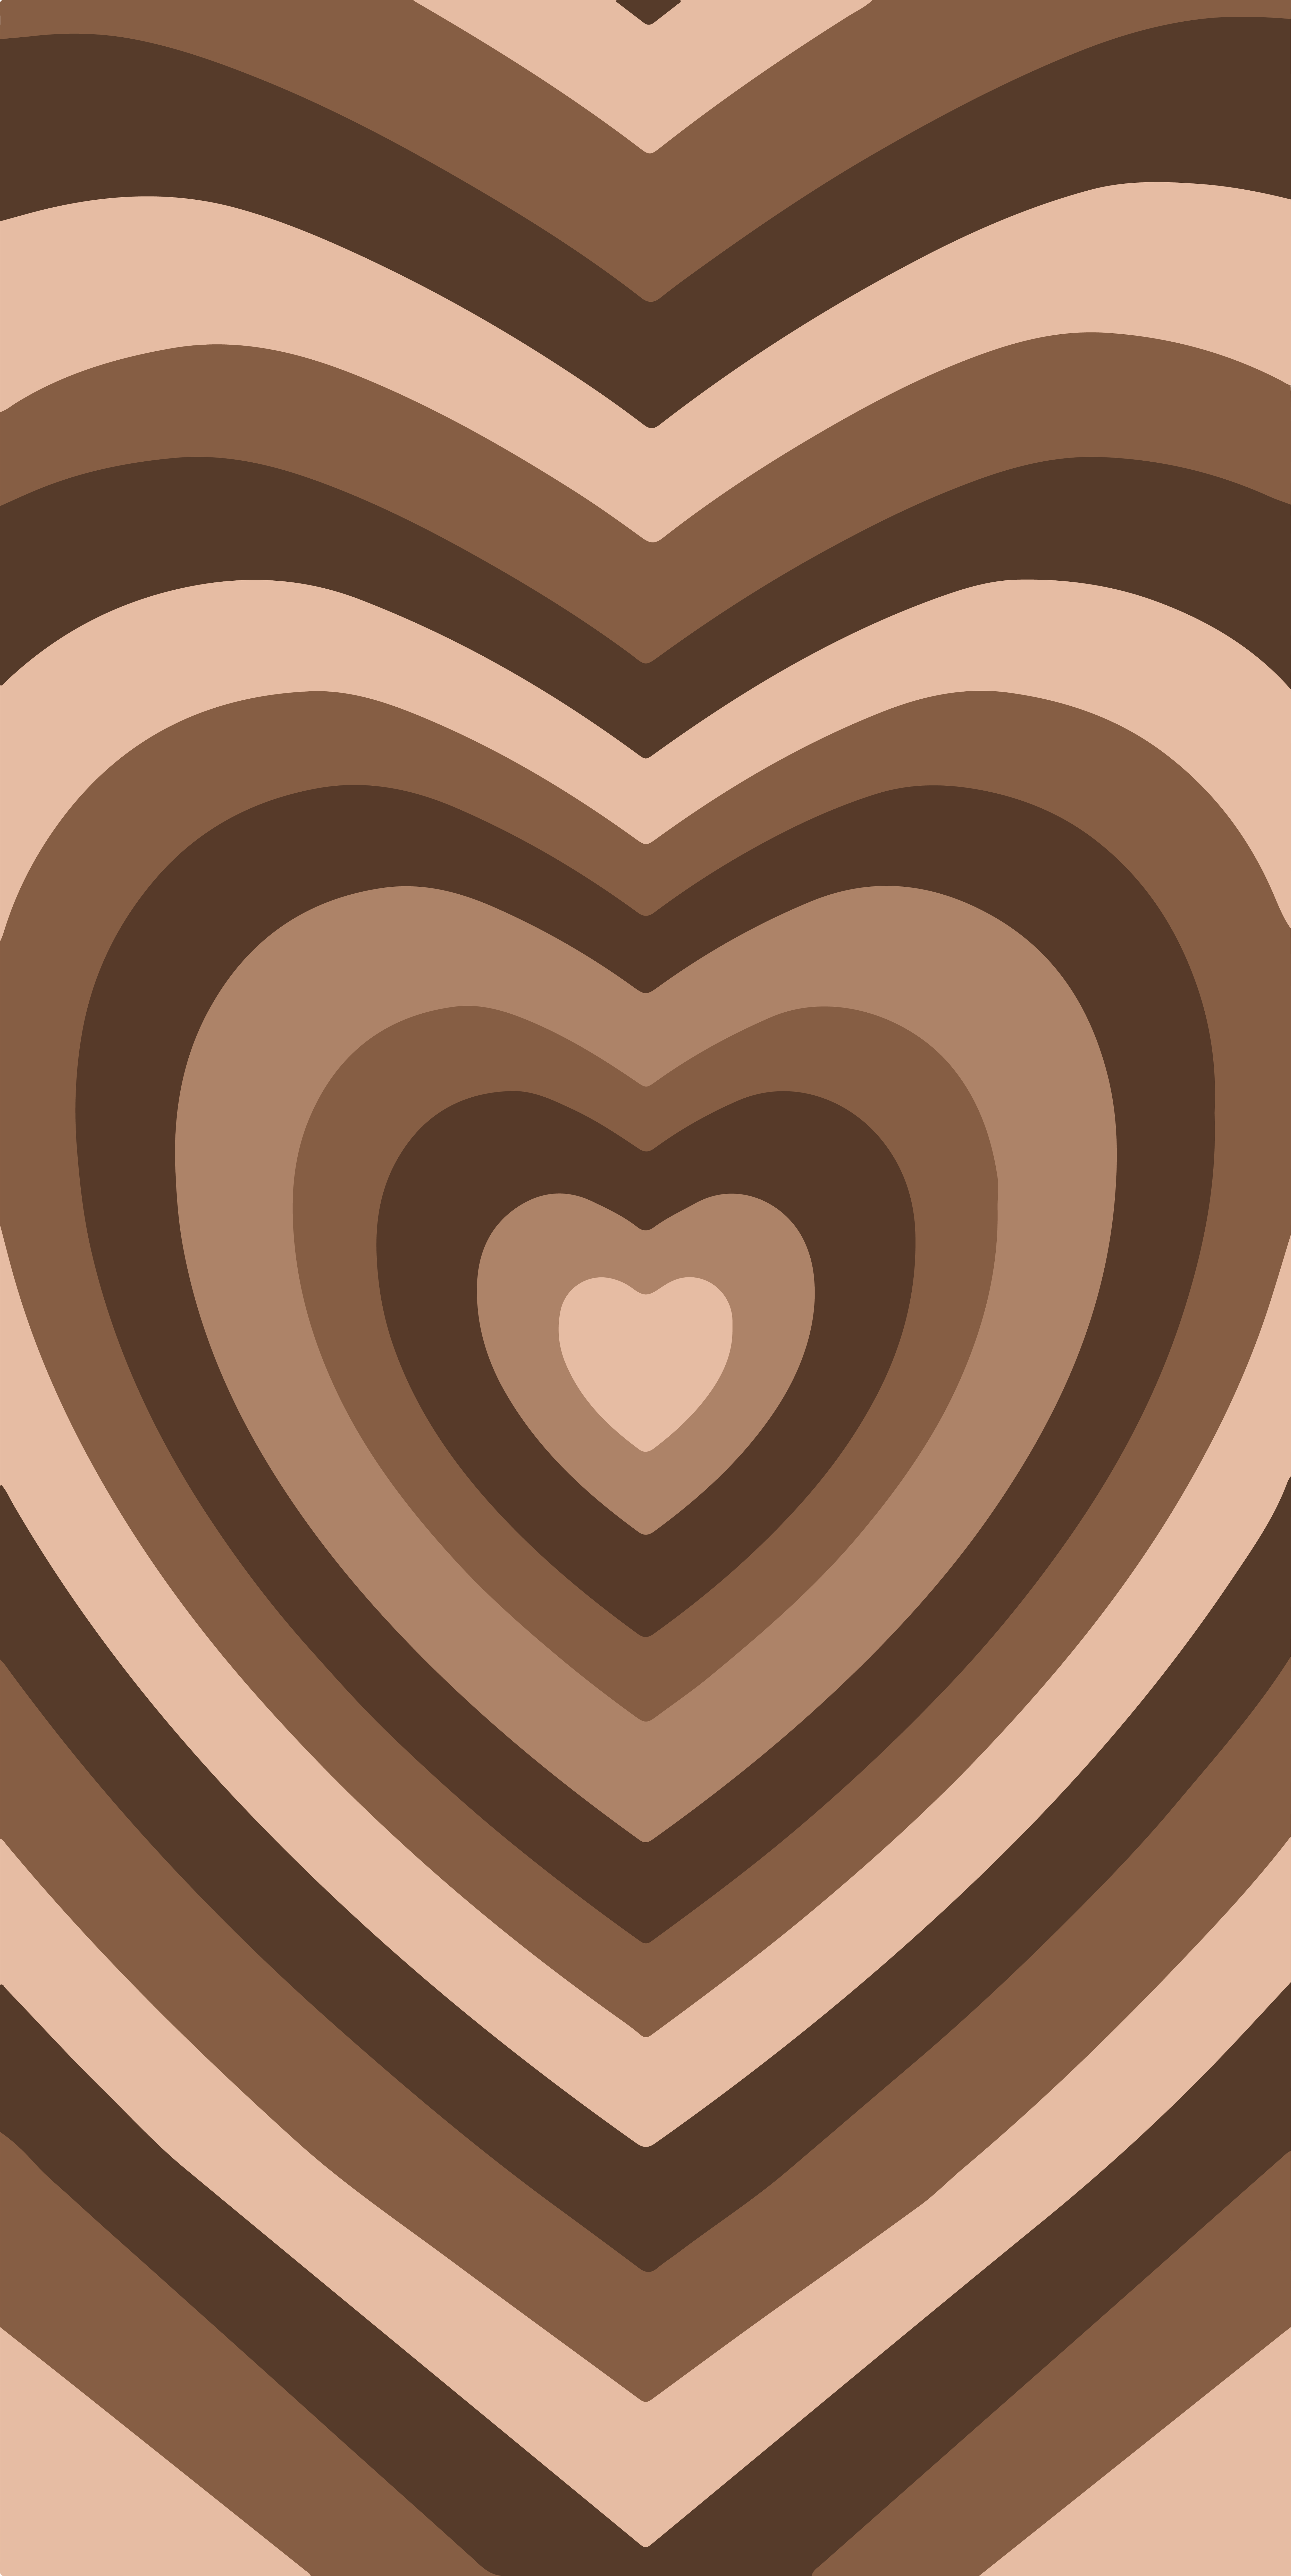 brown powerpuff girls intro. Phone wallpaper patterns, Heart iphone wallpaper, Heart wallpaper